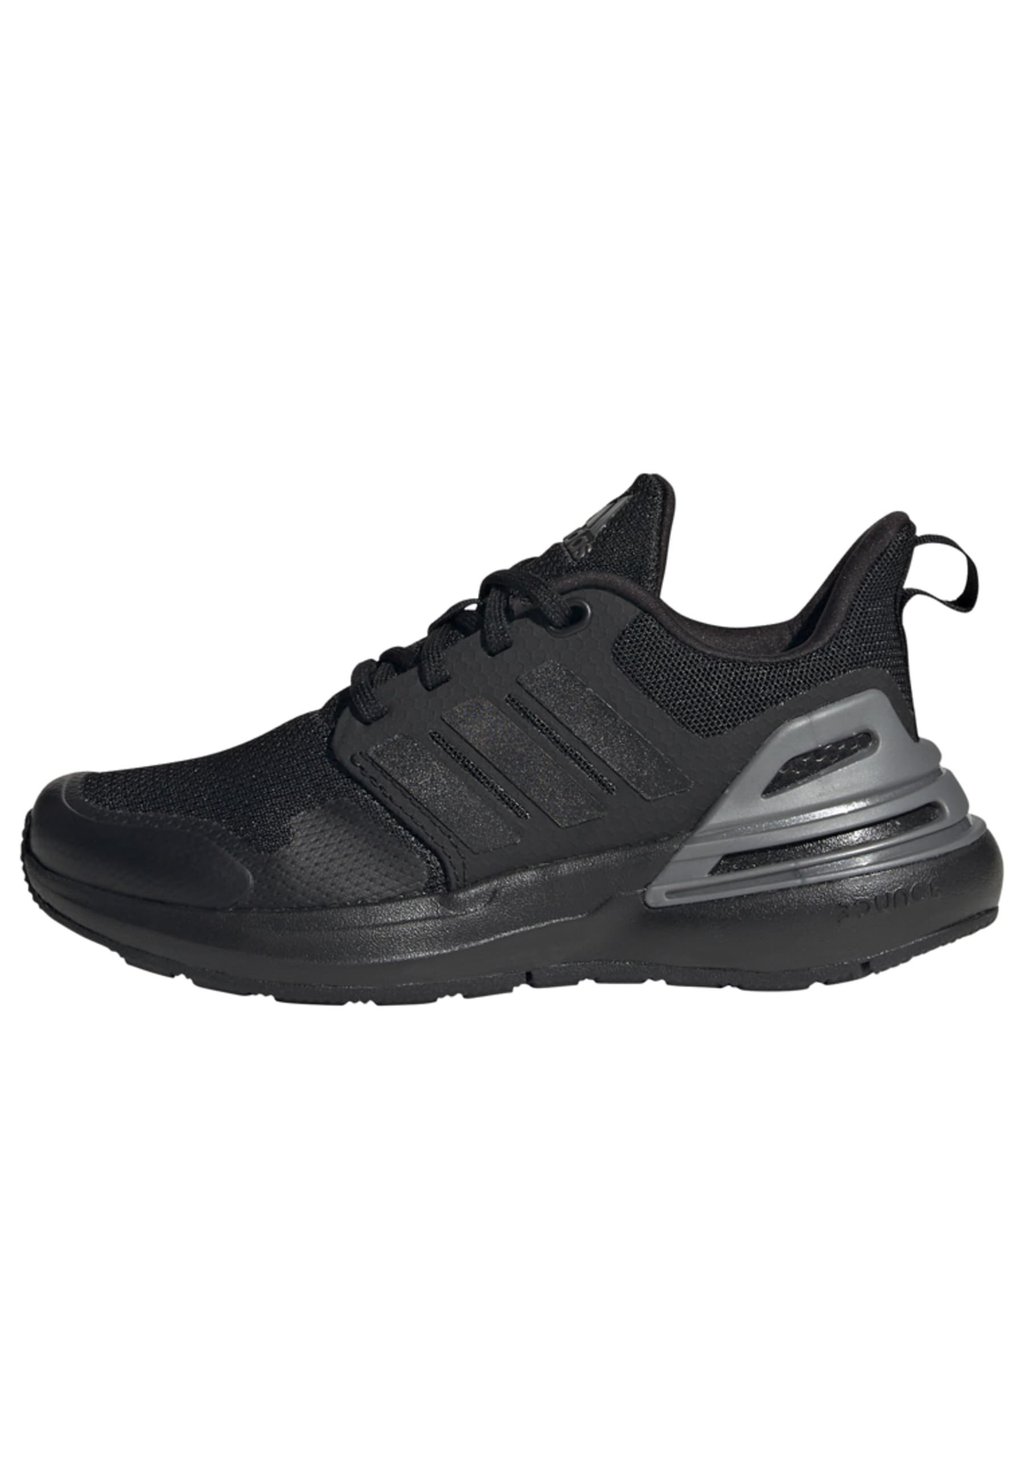 Кроссовки для стабилизирующего бега Rapidasport K Adidas, цвет core black core black iron metallic